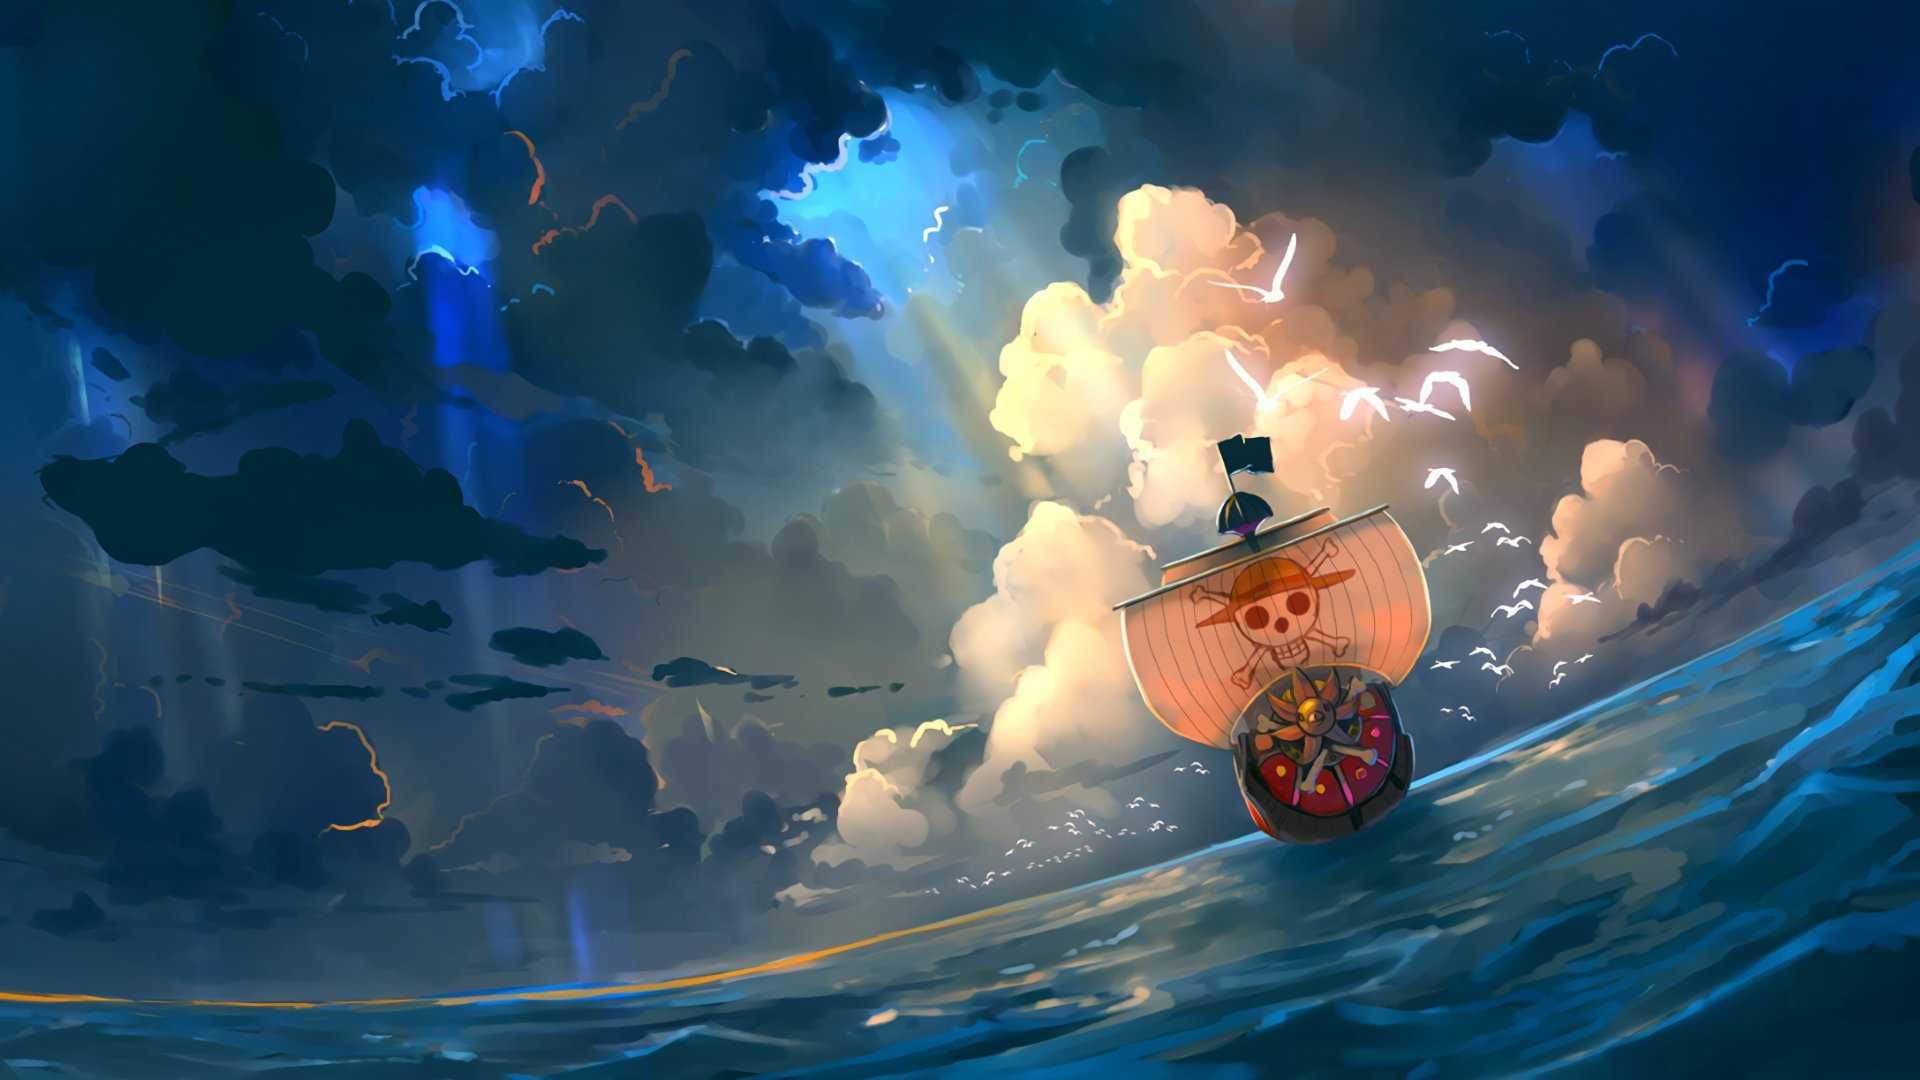 Hình nền One Piece đảo hải tặc 3D đẹp và chất nhất-29